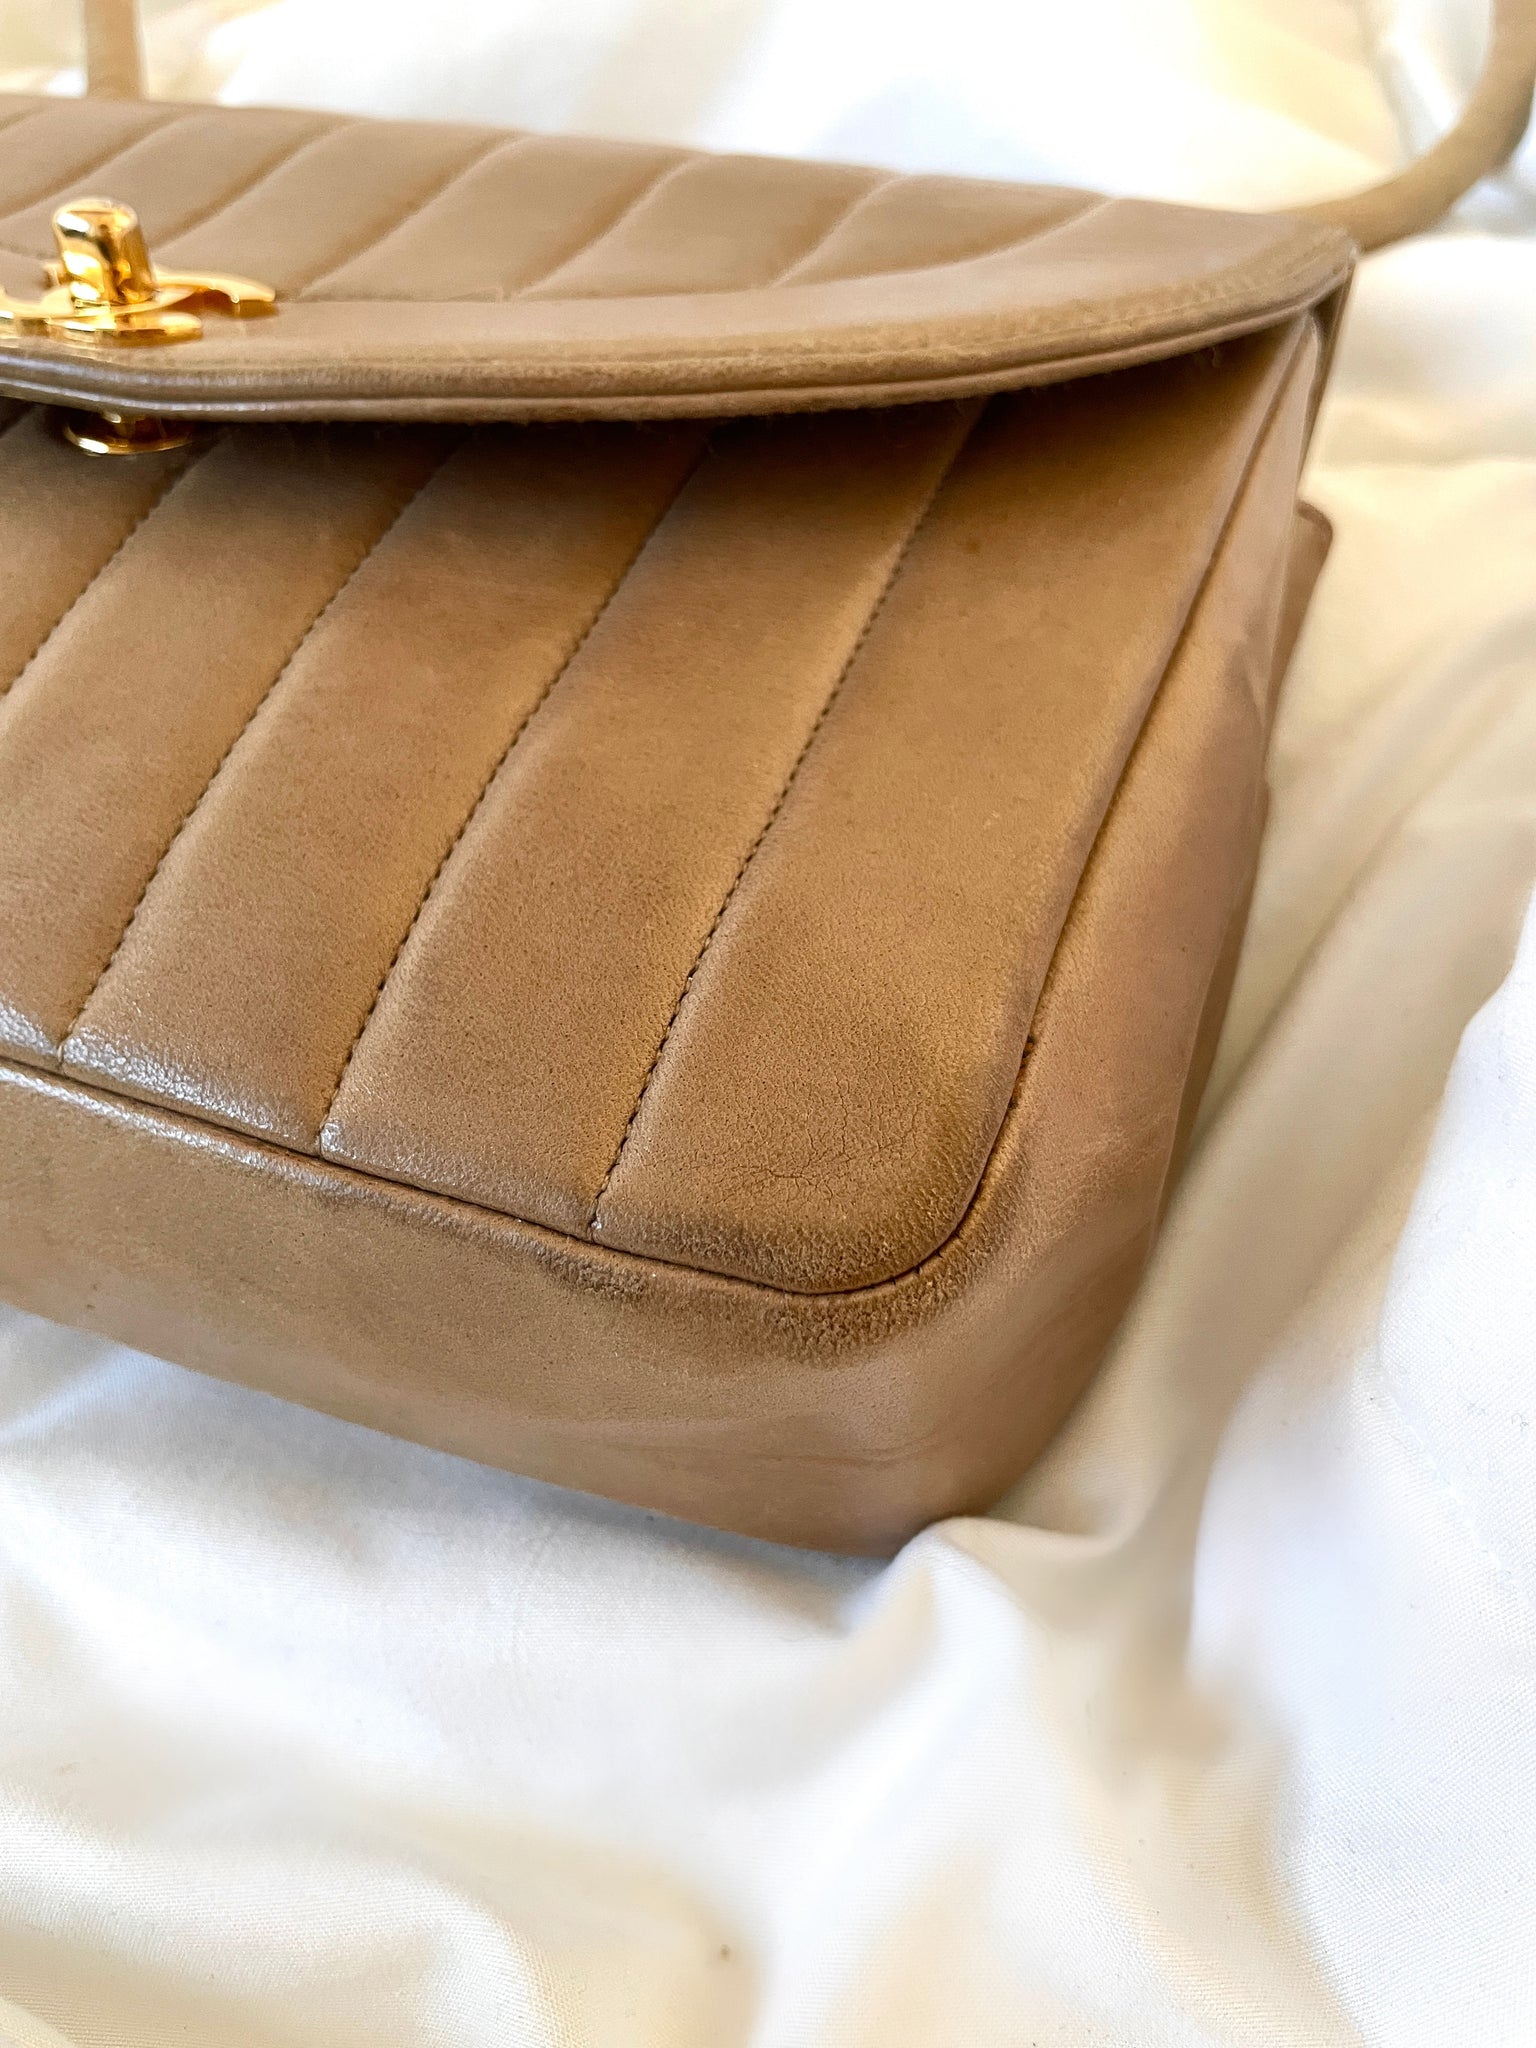 Chanel Mademoiselle Shoulder Bag